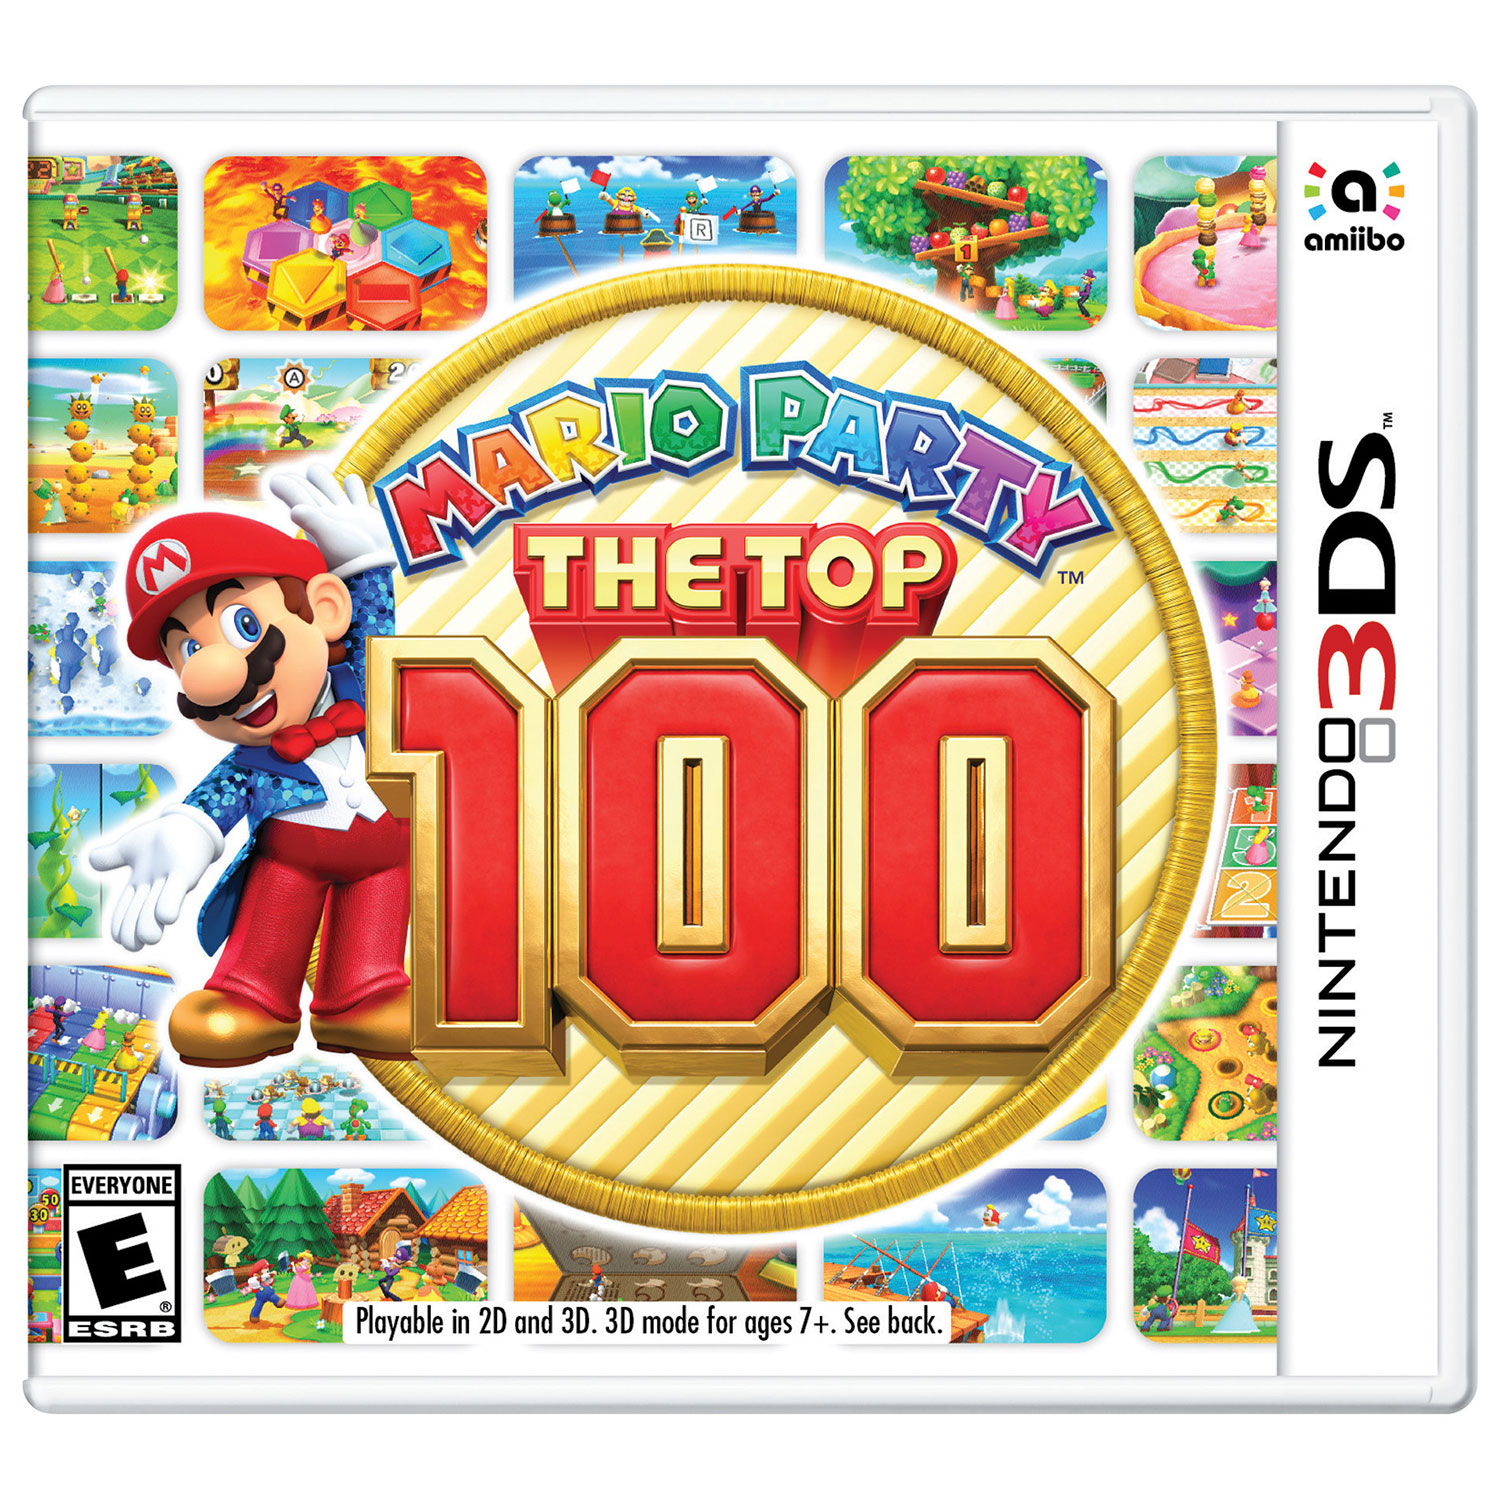 Mario Party The Top 100 box art